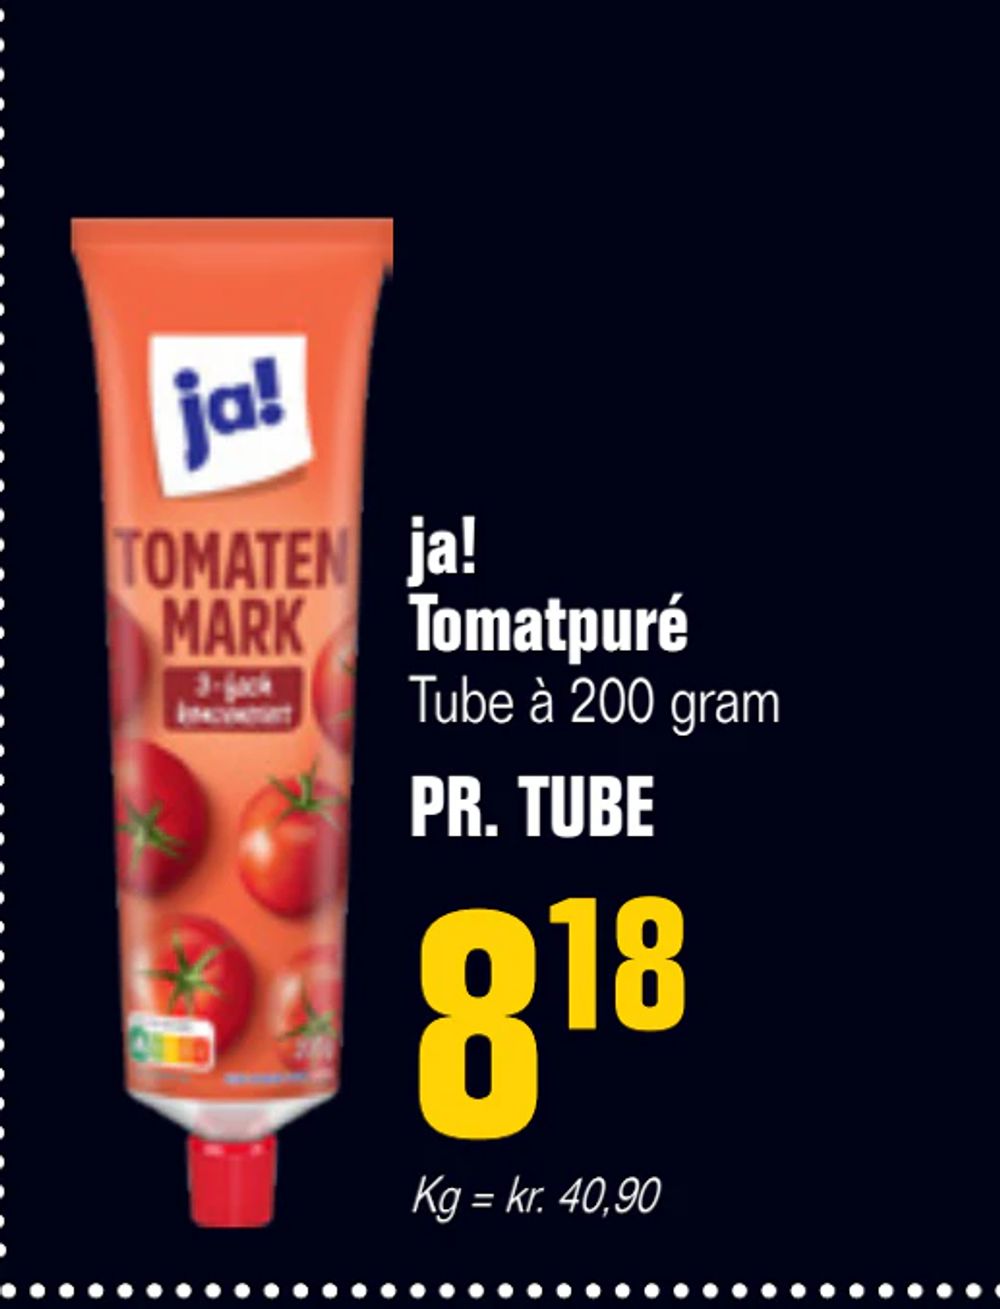 Tilbud på ja! Tomatpuré fra Poetzsch Padborg til 8,18 kr.